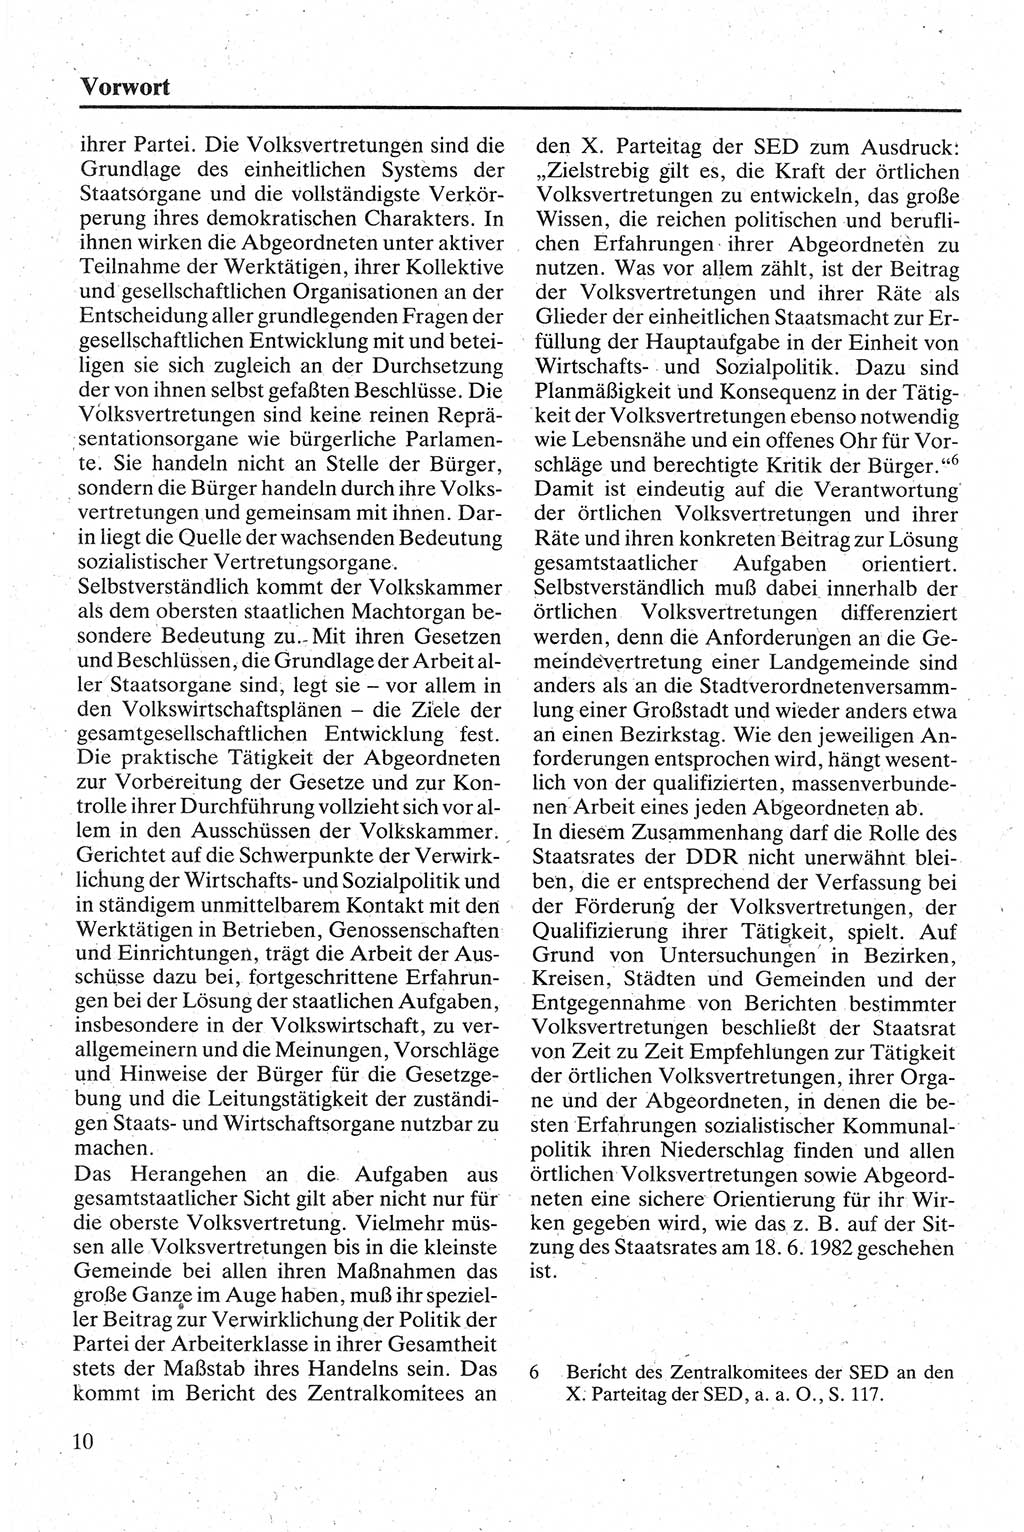 Handbuch für den Abgeordneten [Deutsche Demokratische Republik (DDR)] 1984, Seite 10 (Hb. Abg. DDR 1984, S. 10)